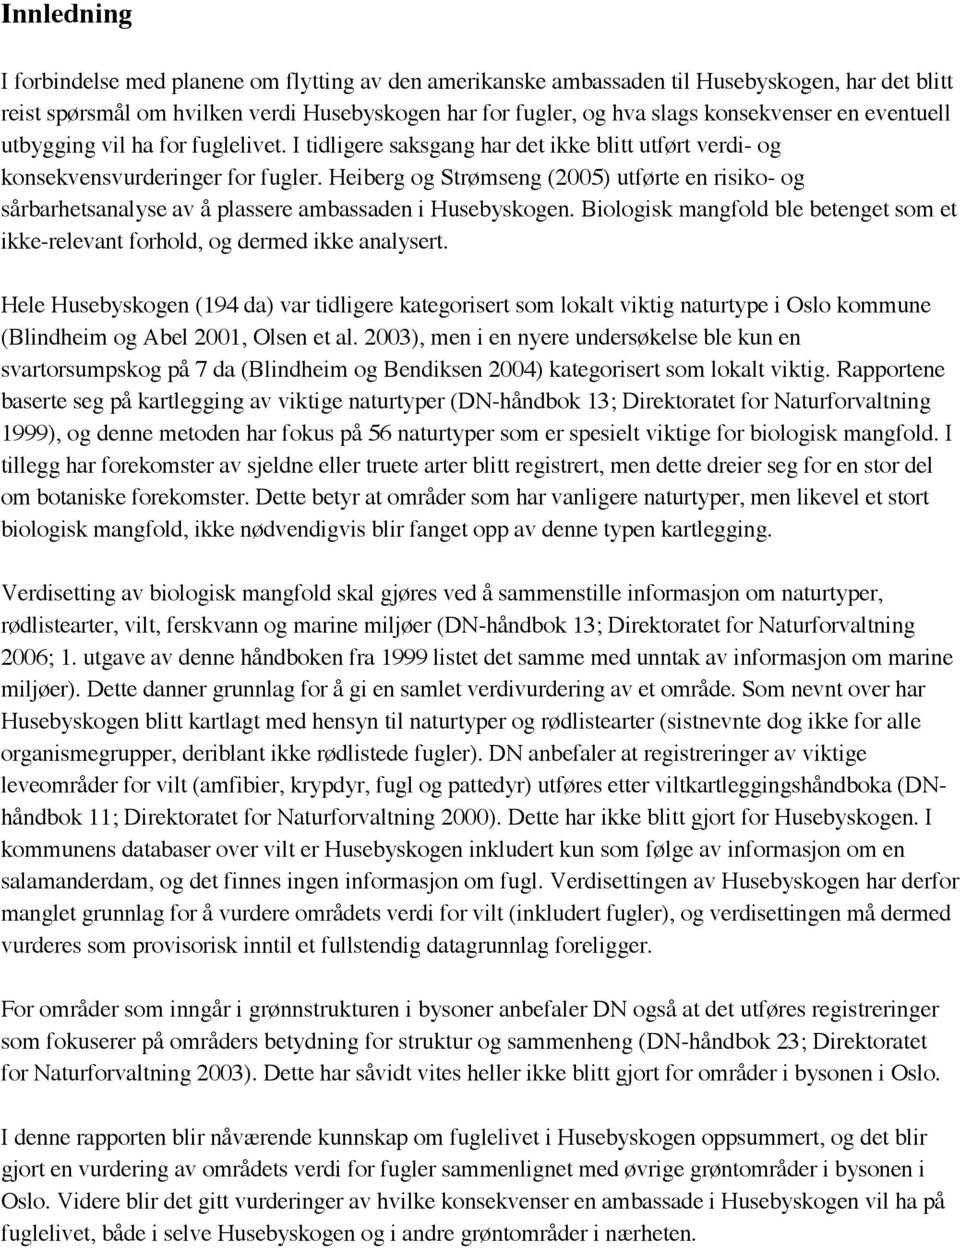 Heiberg og Strømseng (2005) utførte en risiko- og sårbarhetsanalyse av å plassere ambassaden i Husebyskogen. Biologisk mangfold ble betenget som et ikke-relevant forhold, og dermed ikke analysert.